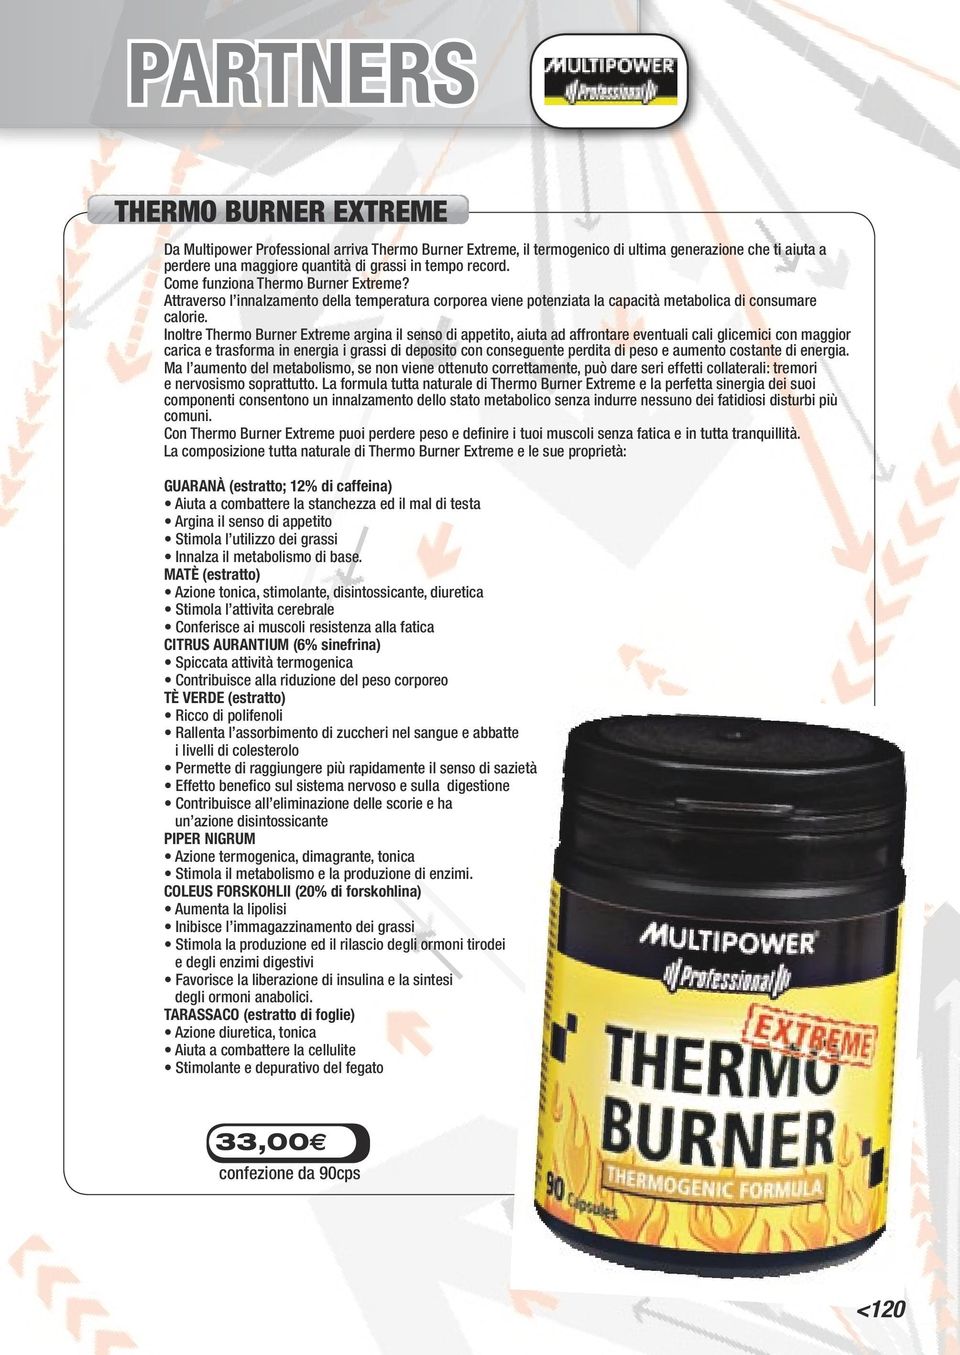 Inoltre Thermo Burner Extreme argina il senso di appetito, aiuta ad affrontare eventuali cali glicemici con maggior carica e trasforma in energia i grassi di deposito con conseguente perdita di peso